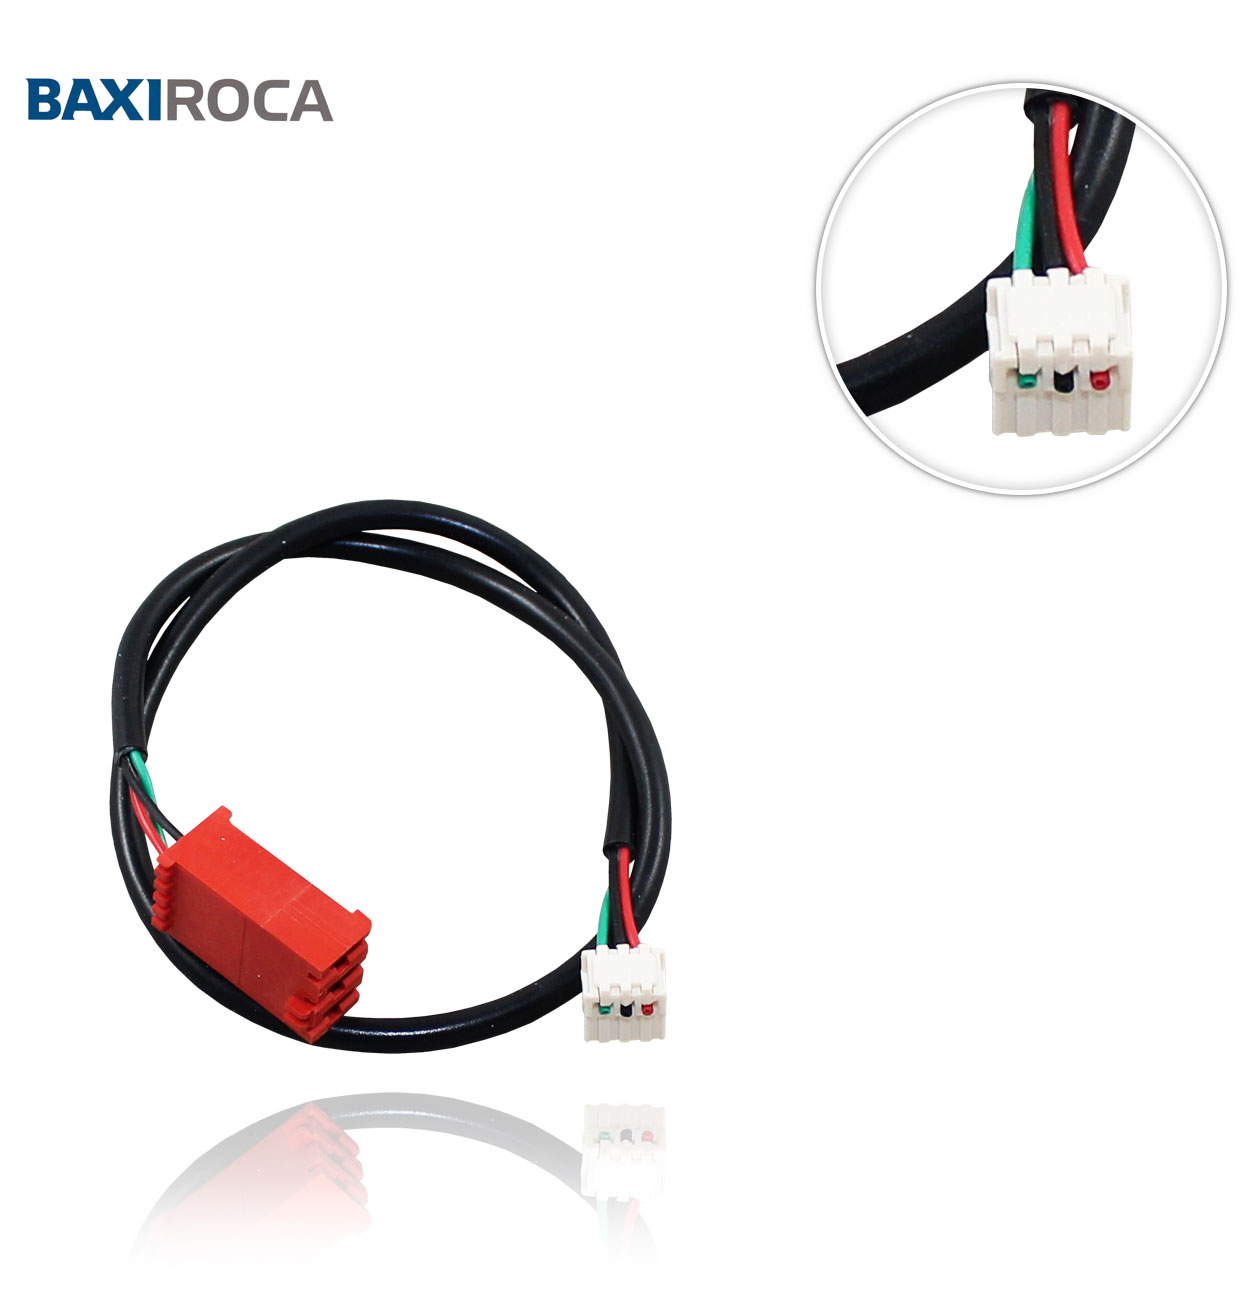 ROCA 147057200 PRESSURE SENSOR CABLE TO GAVINA GTI CONFORT CONTROLLER